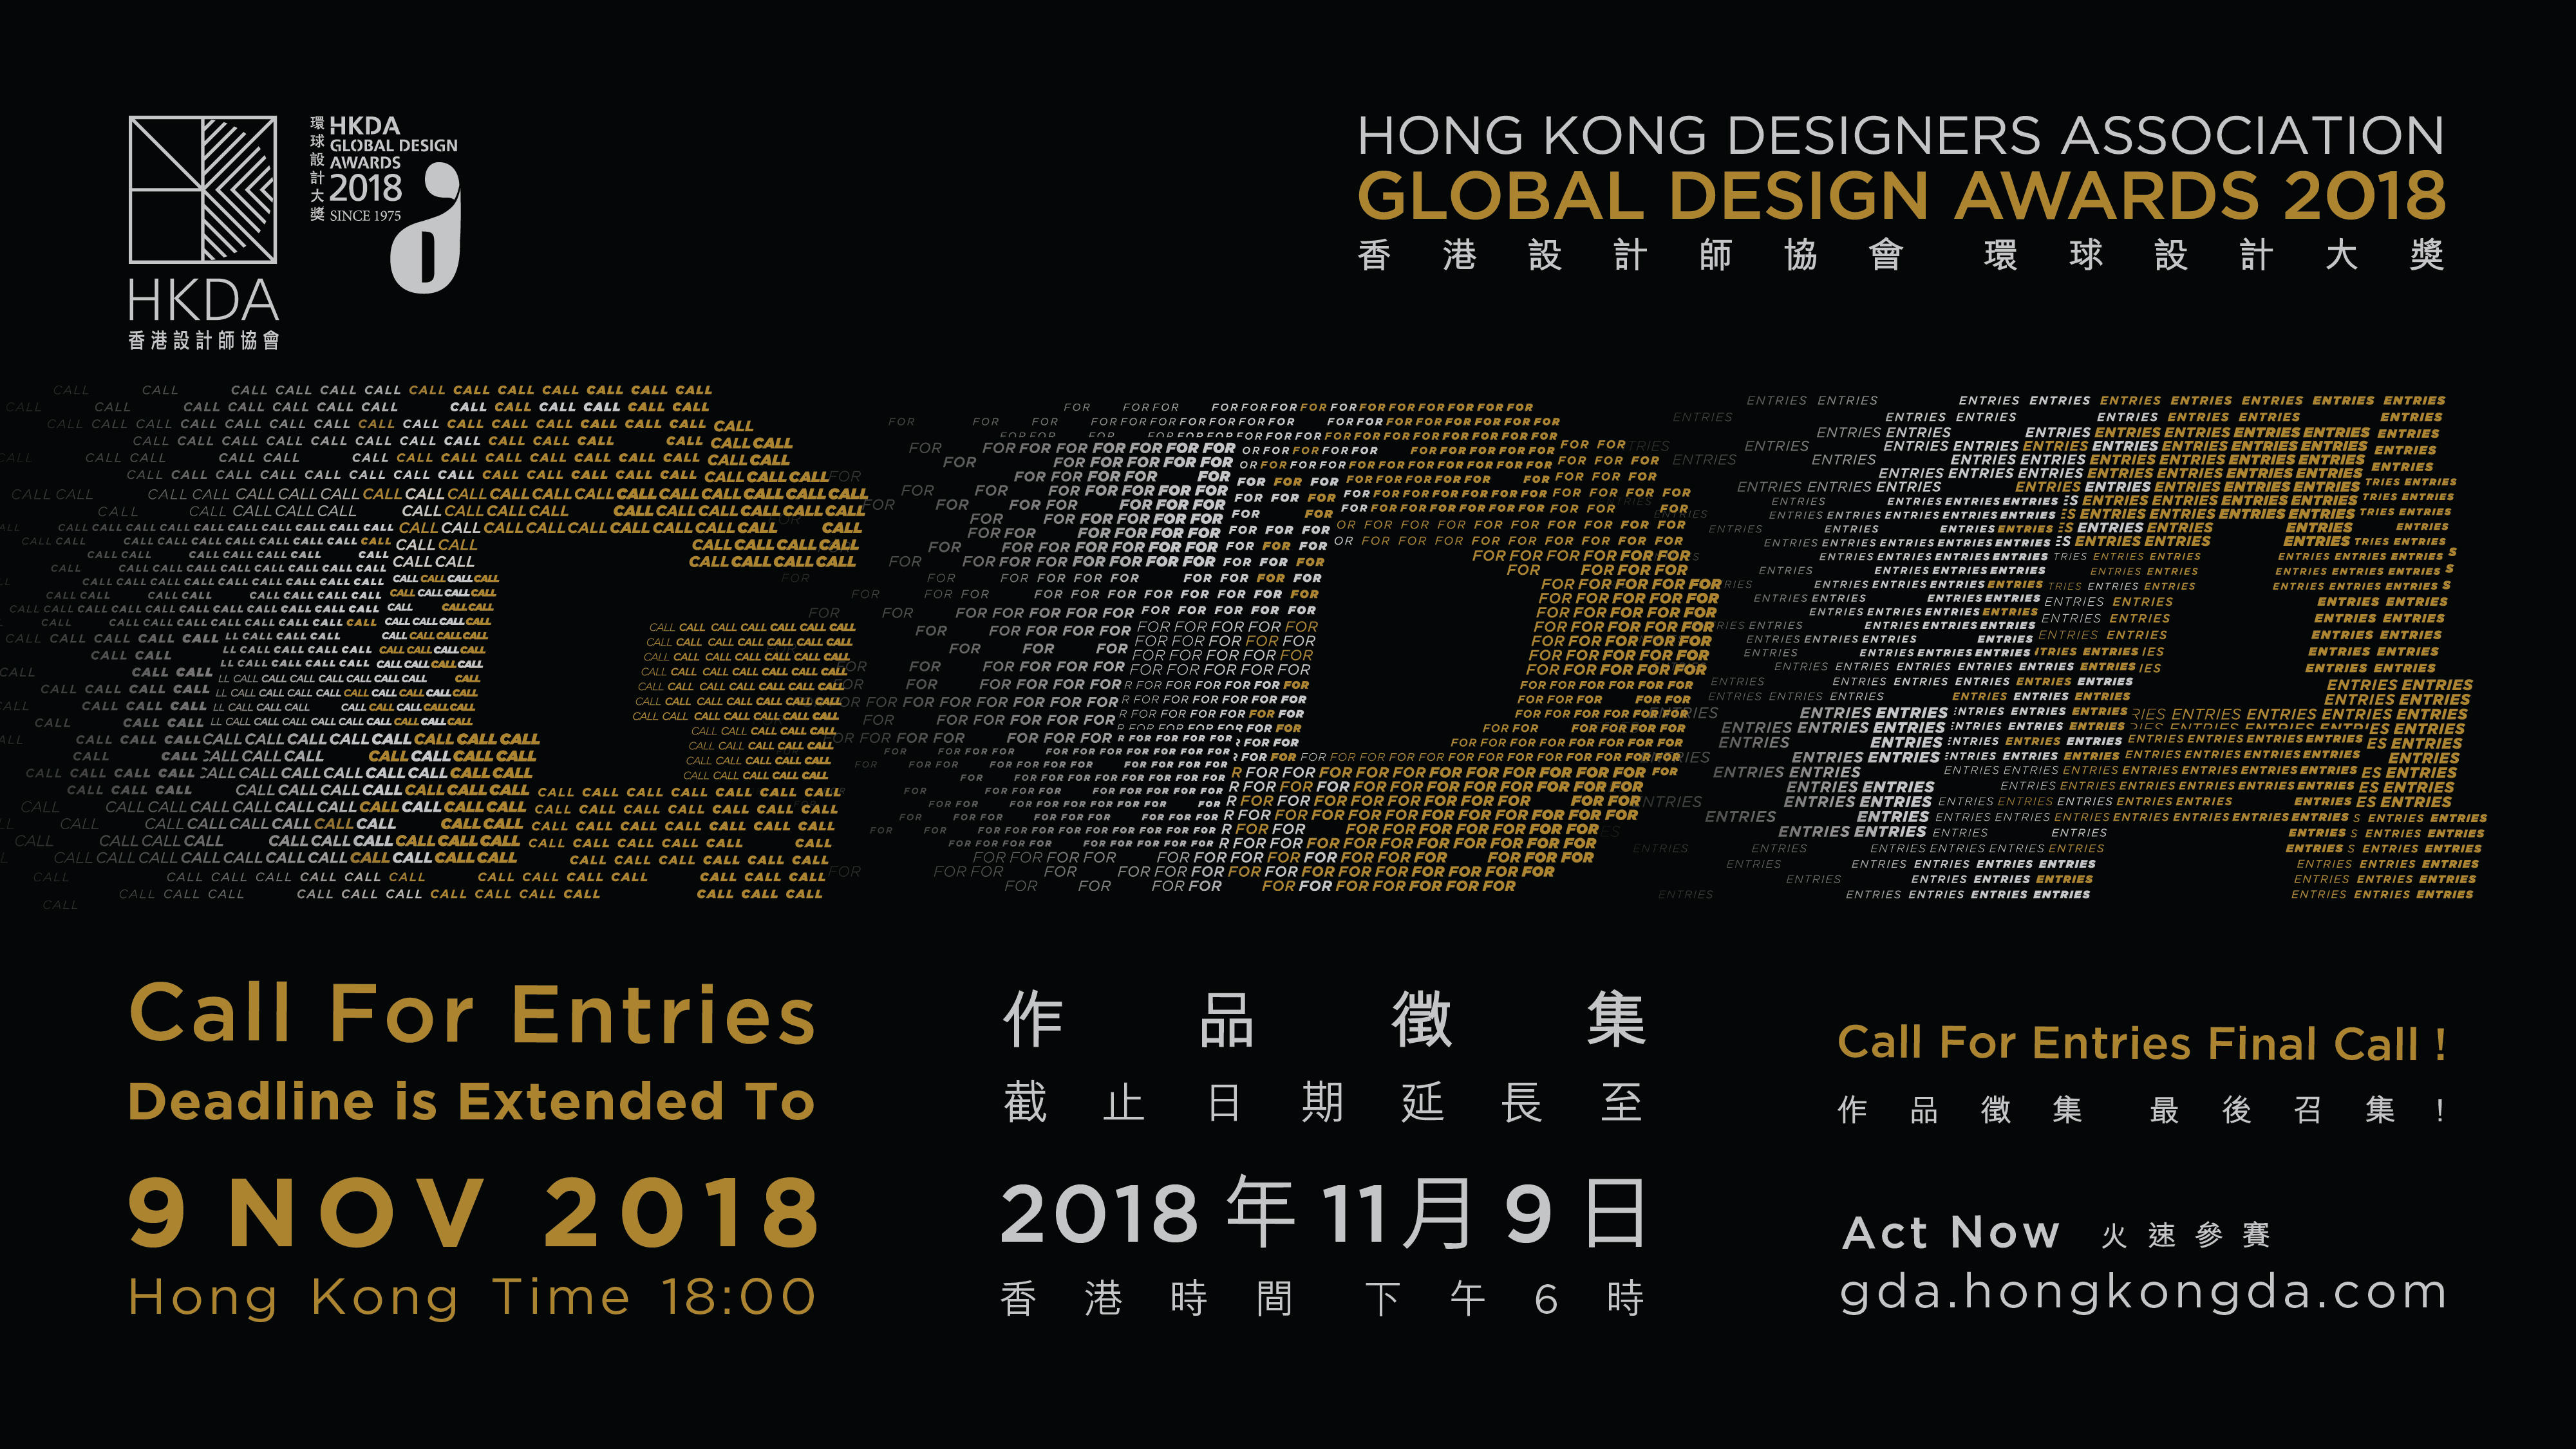 支持活动 - 「香港设计师协会环球设计大奖2018」现正接受报名